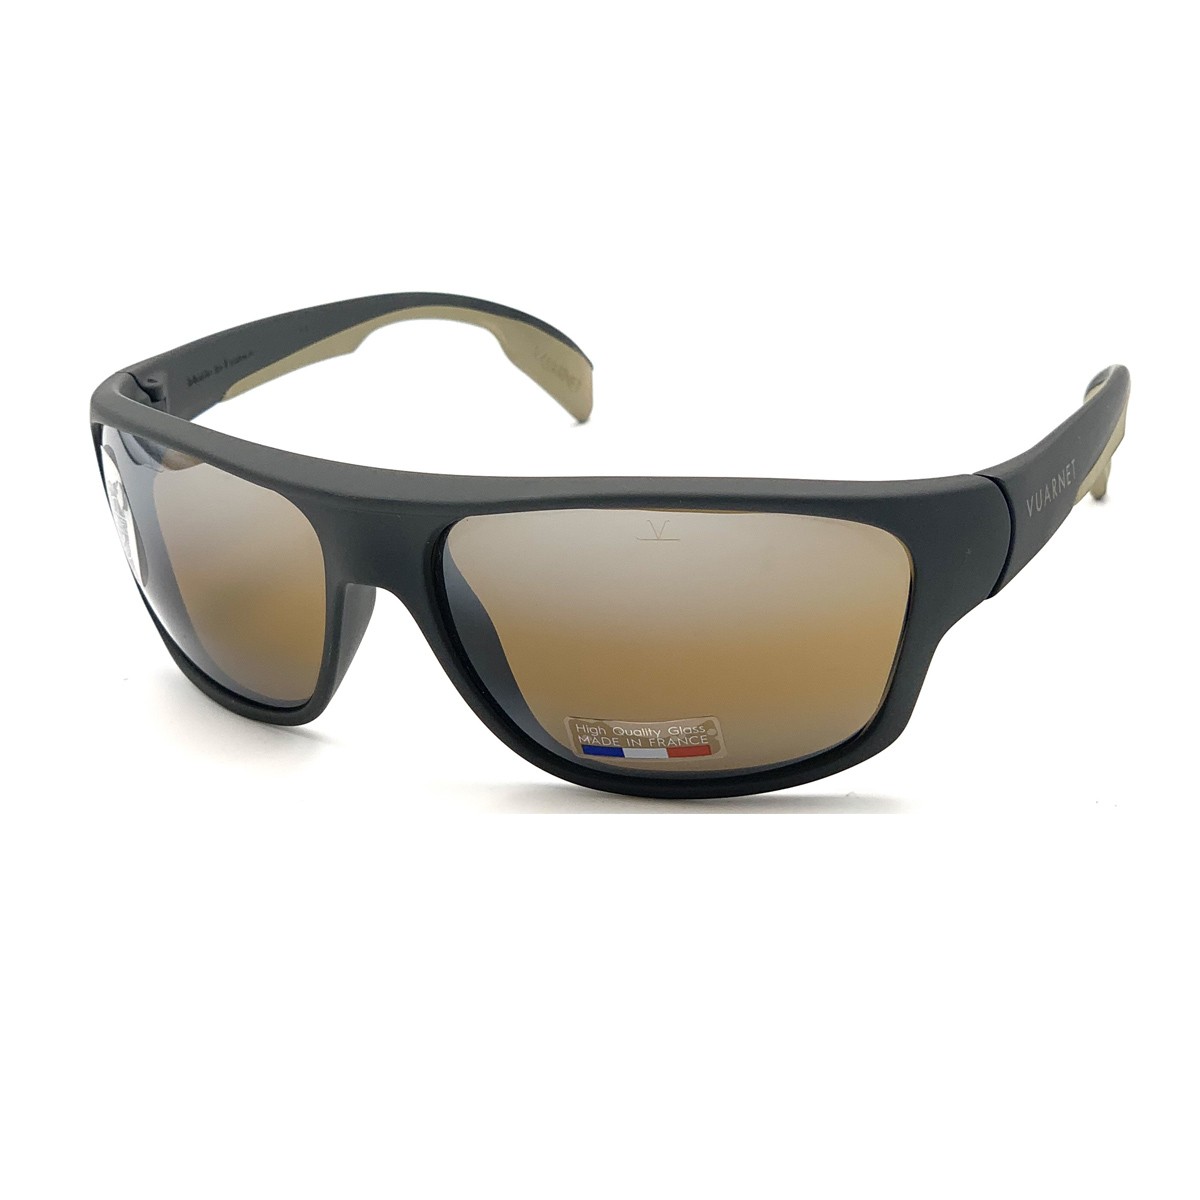 VL 1402 0003 2136 | Unisex sunglasses